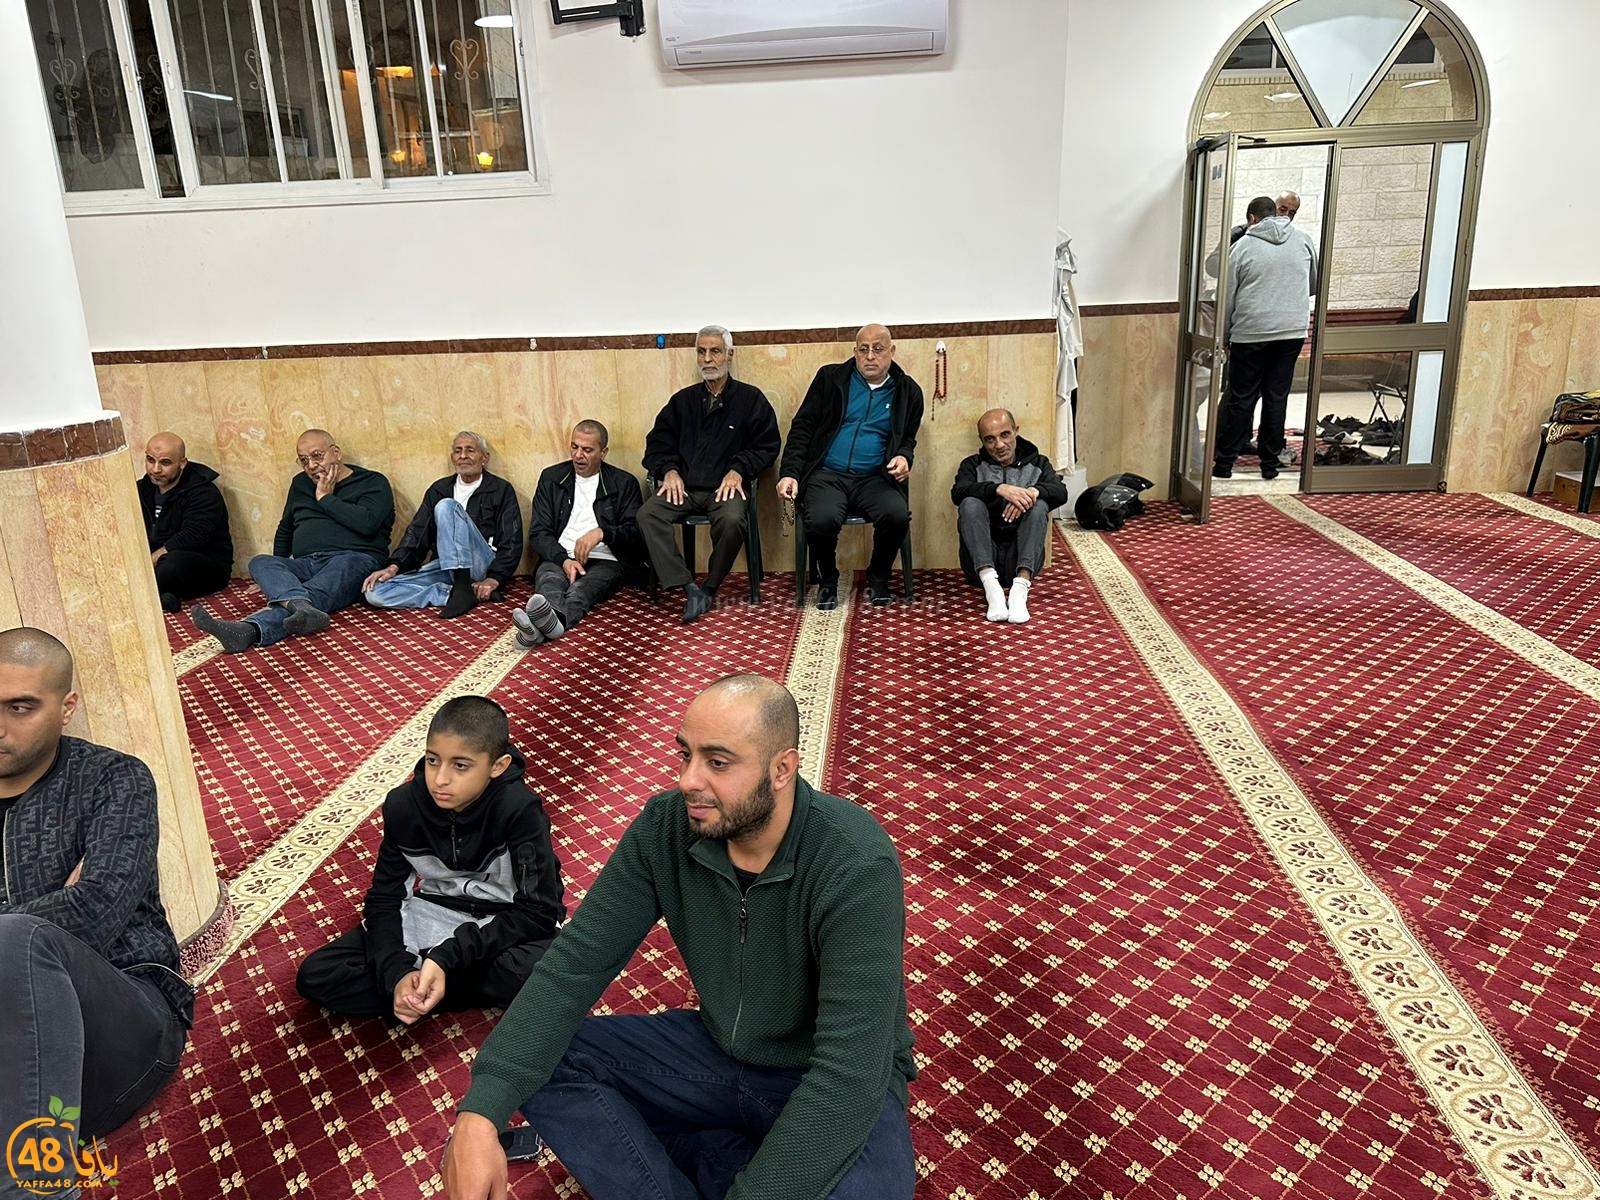 يافا: الشيخ الشاب آدم حمّاد يحل ضيفا على مجالس النور في مسجد العجمي